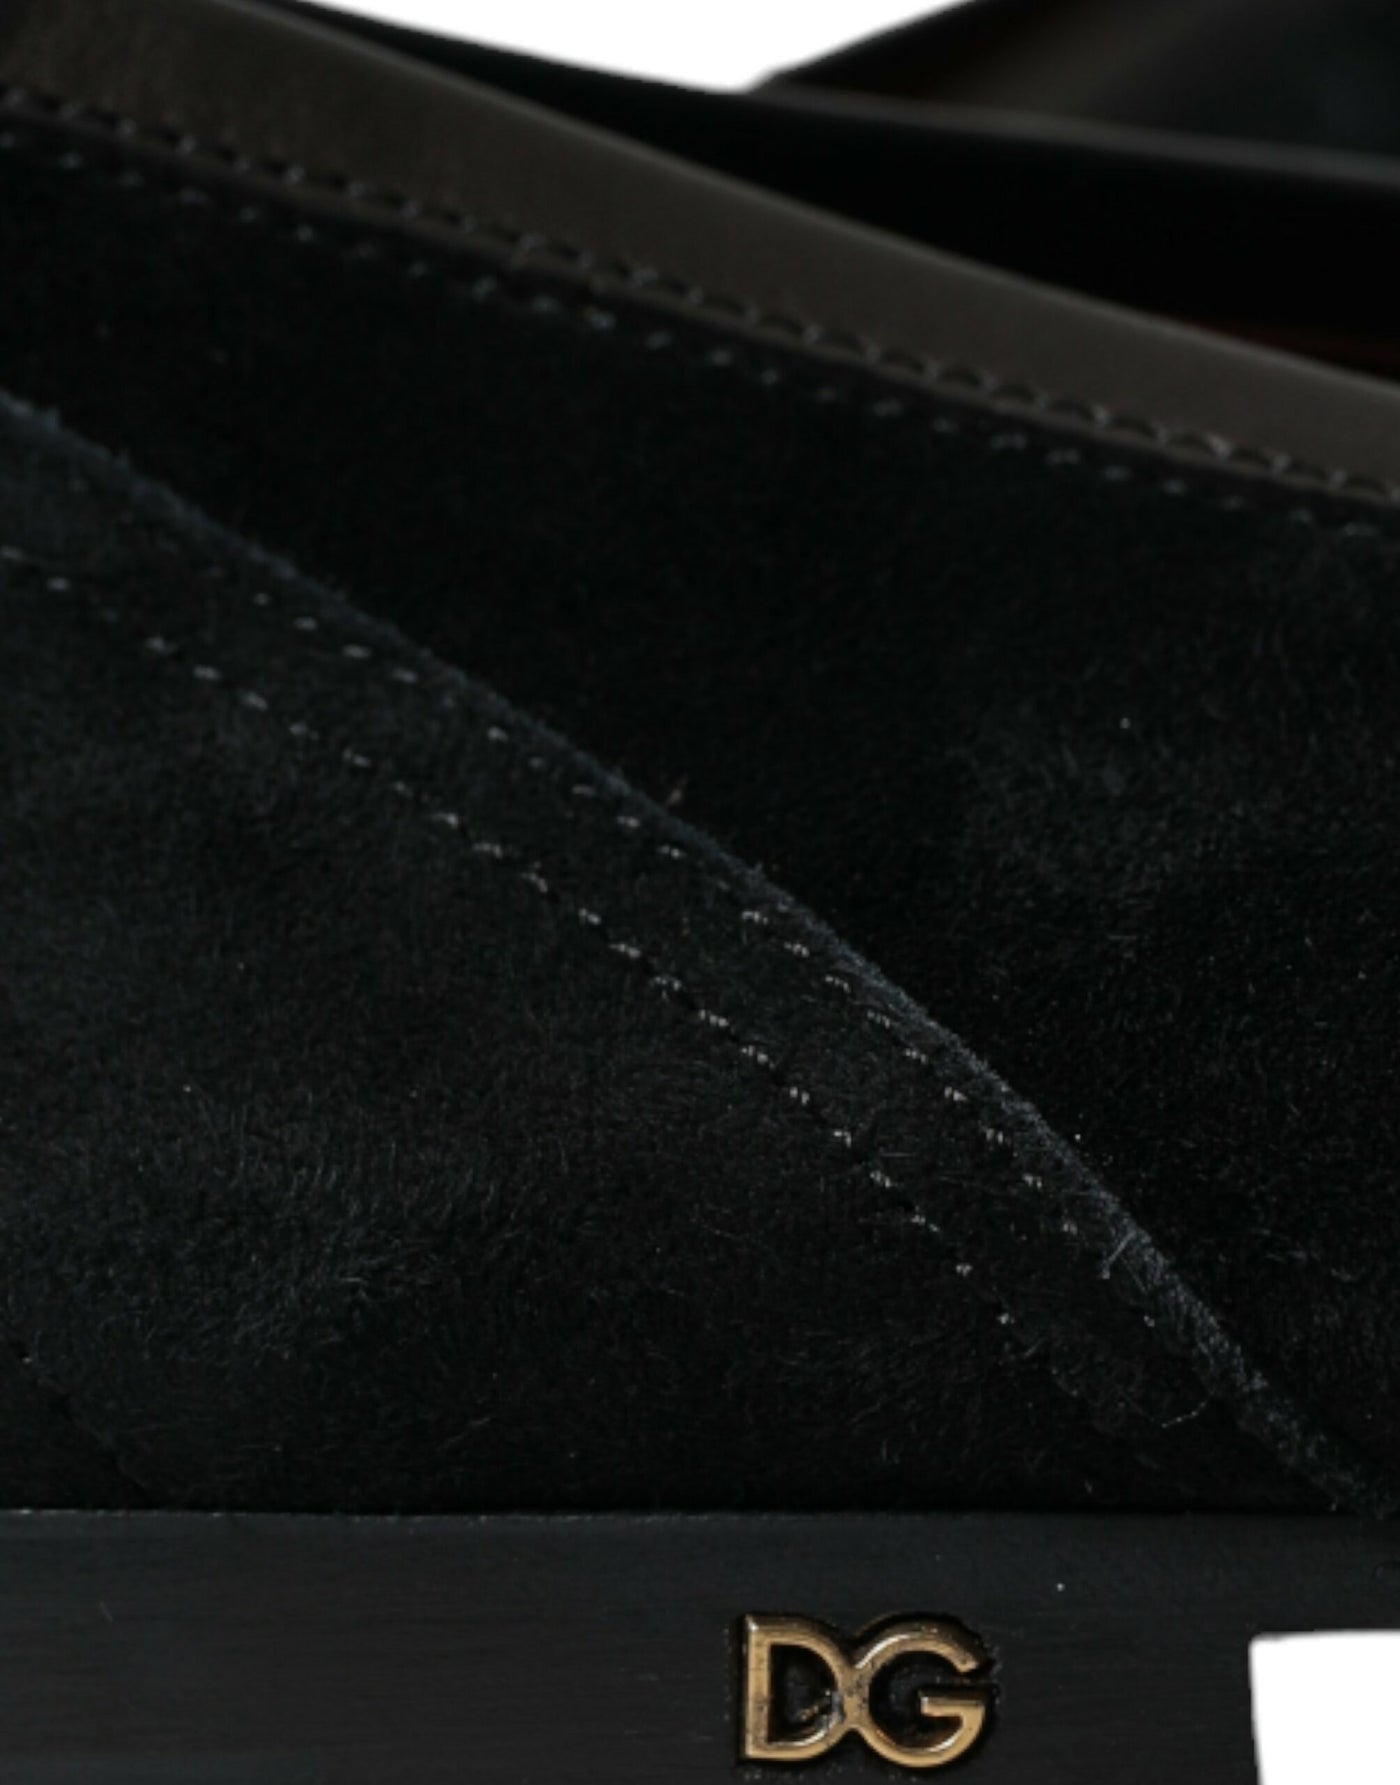 Dolce & Gabbana Black Velvet Slip On Loafers Dress Shoes